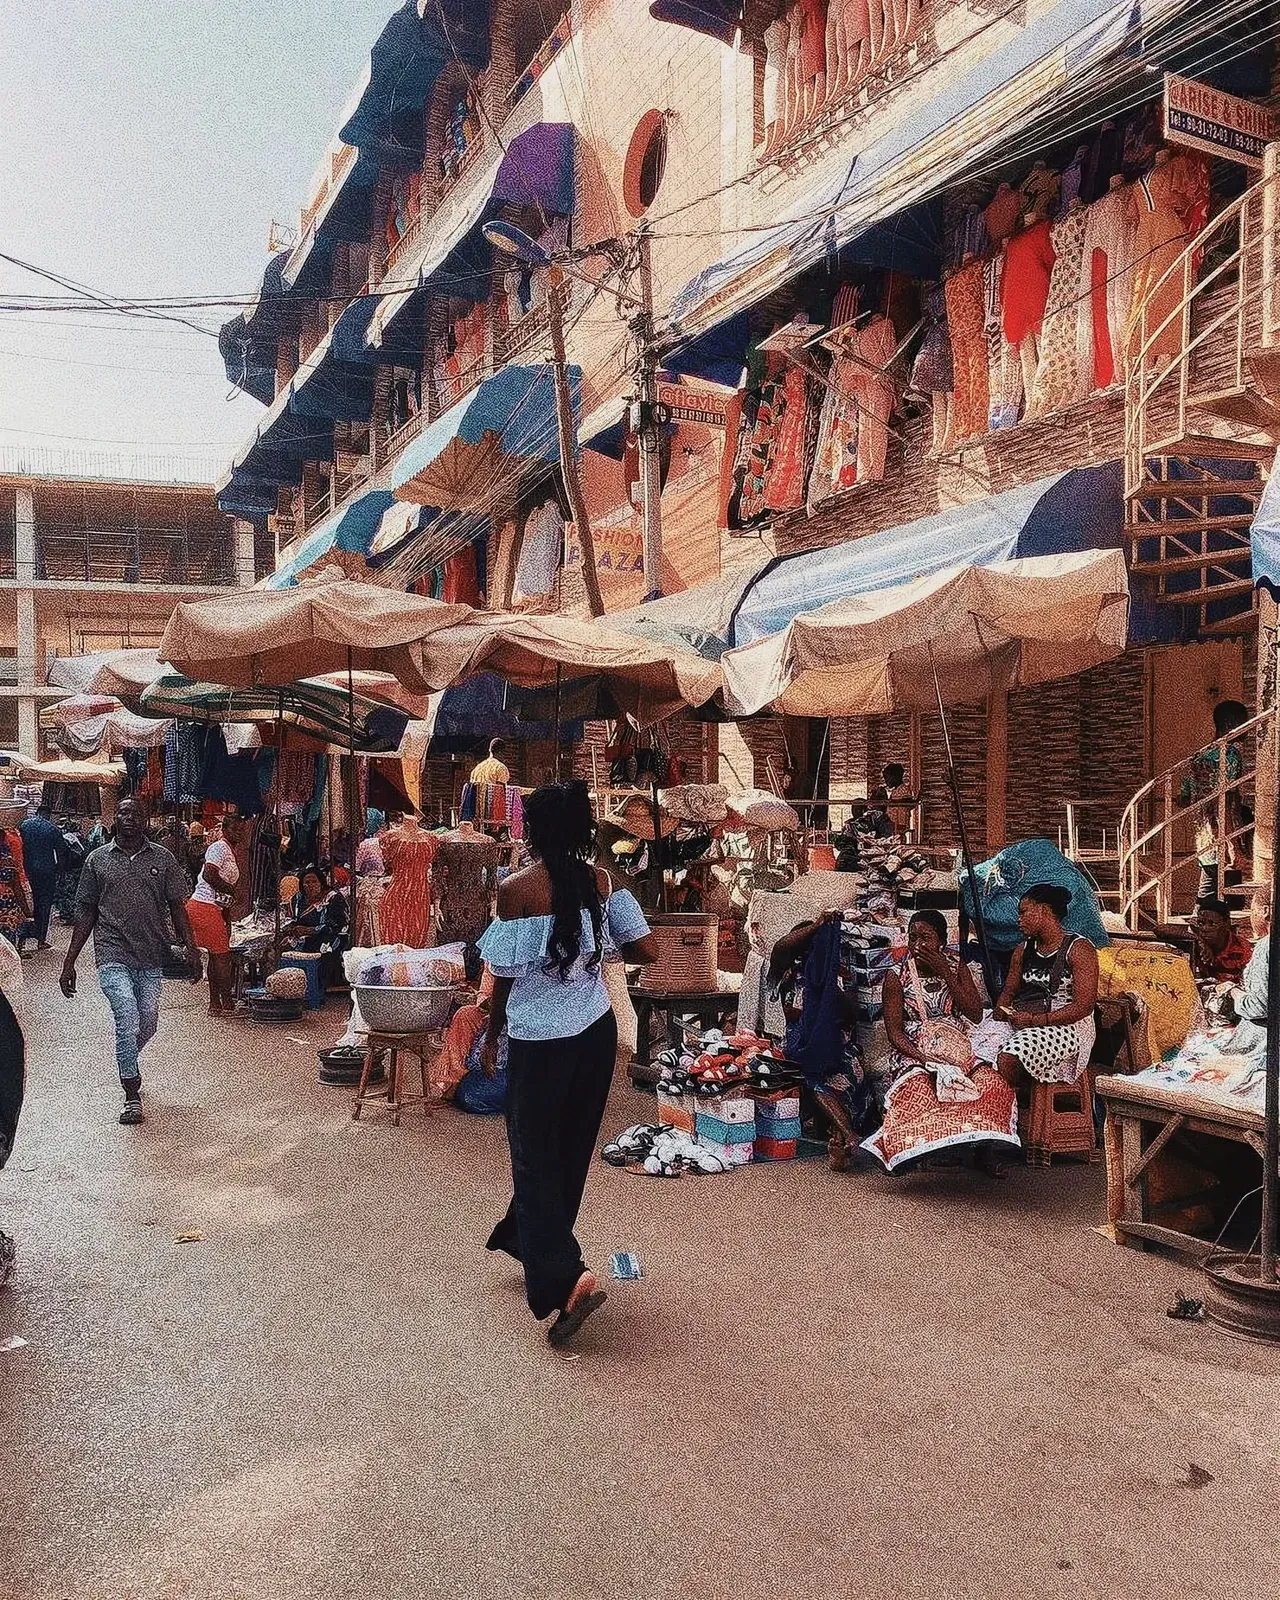 Bustling marketplace scene in Togo